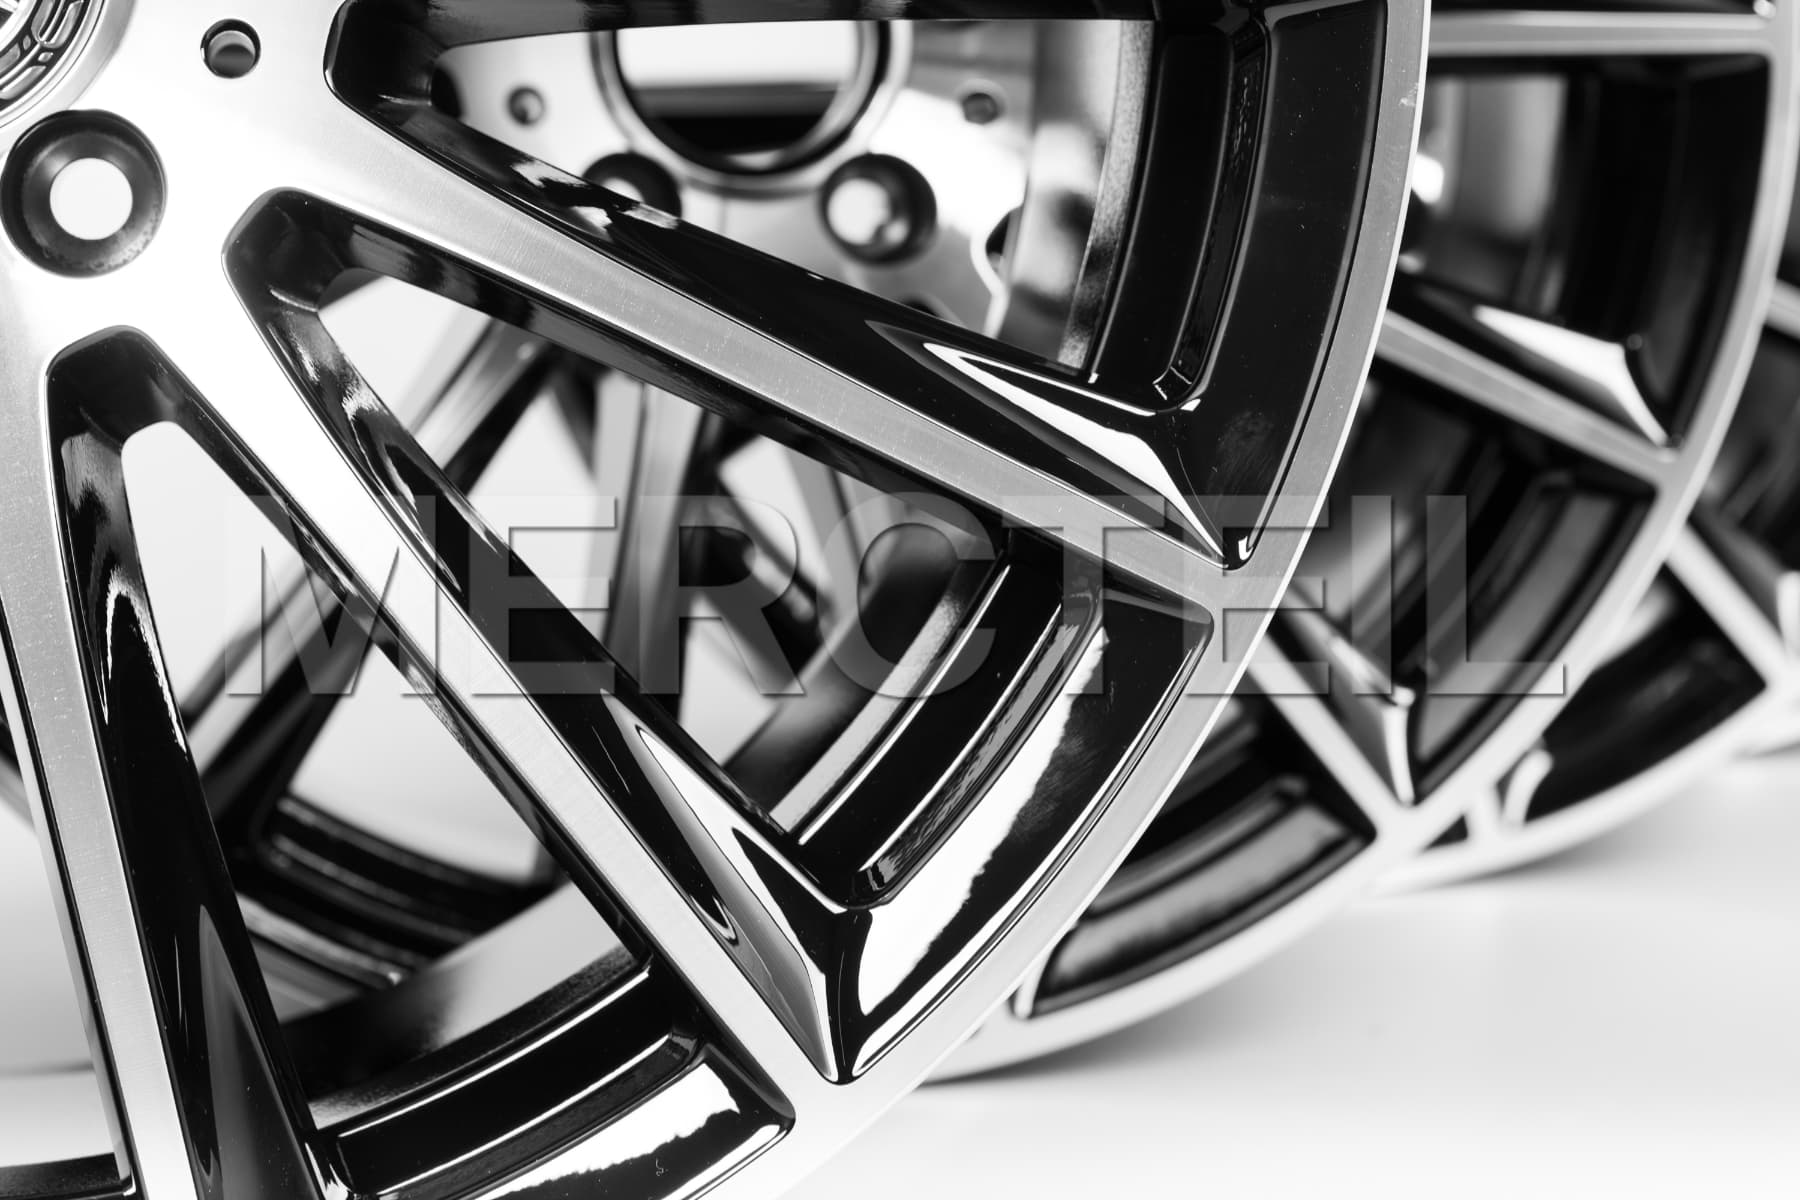 19-inch all-season wheels original Mercedes GLC C253 X2